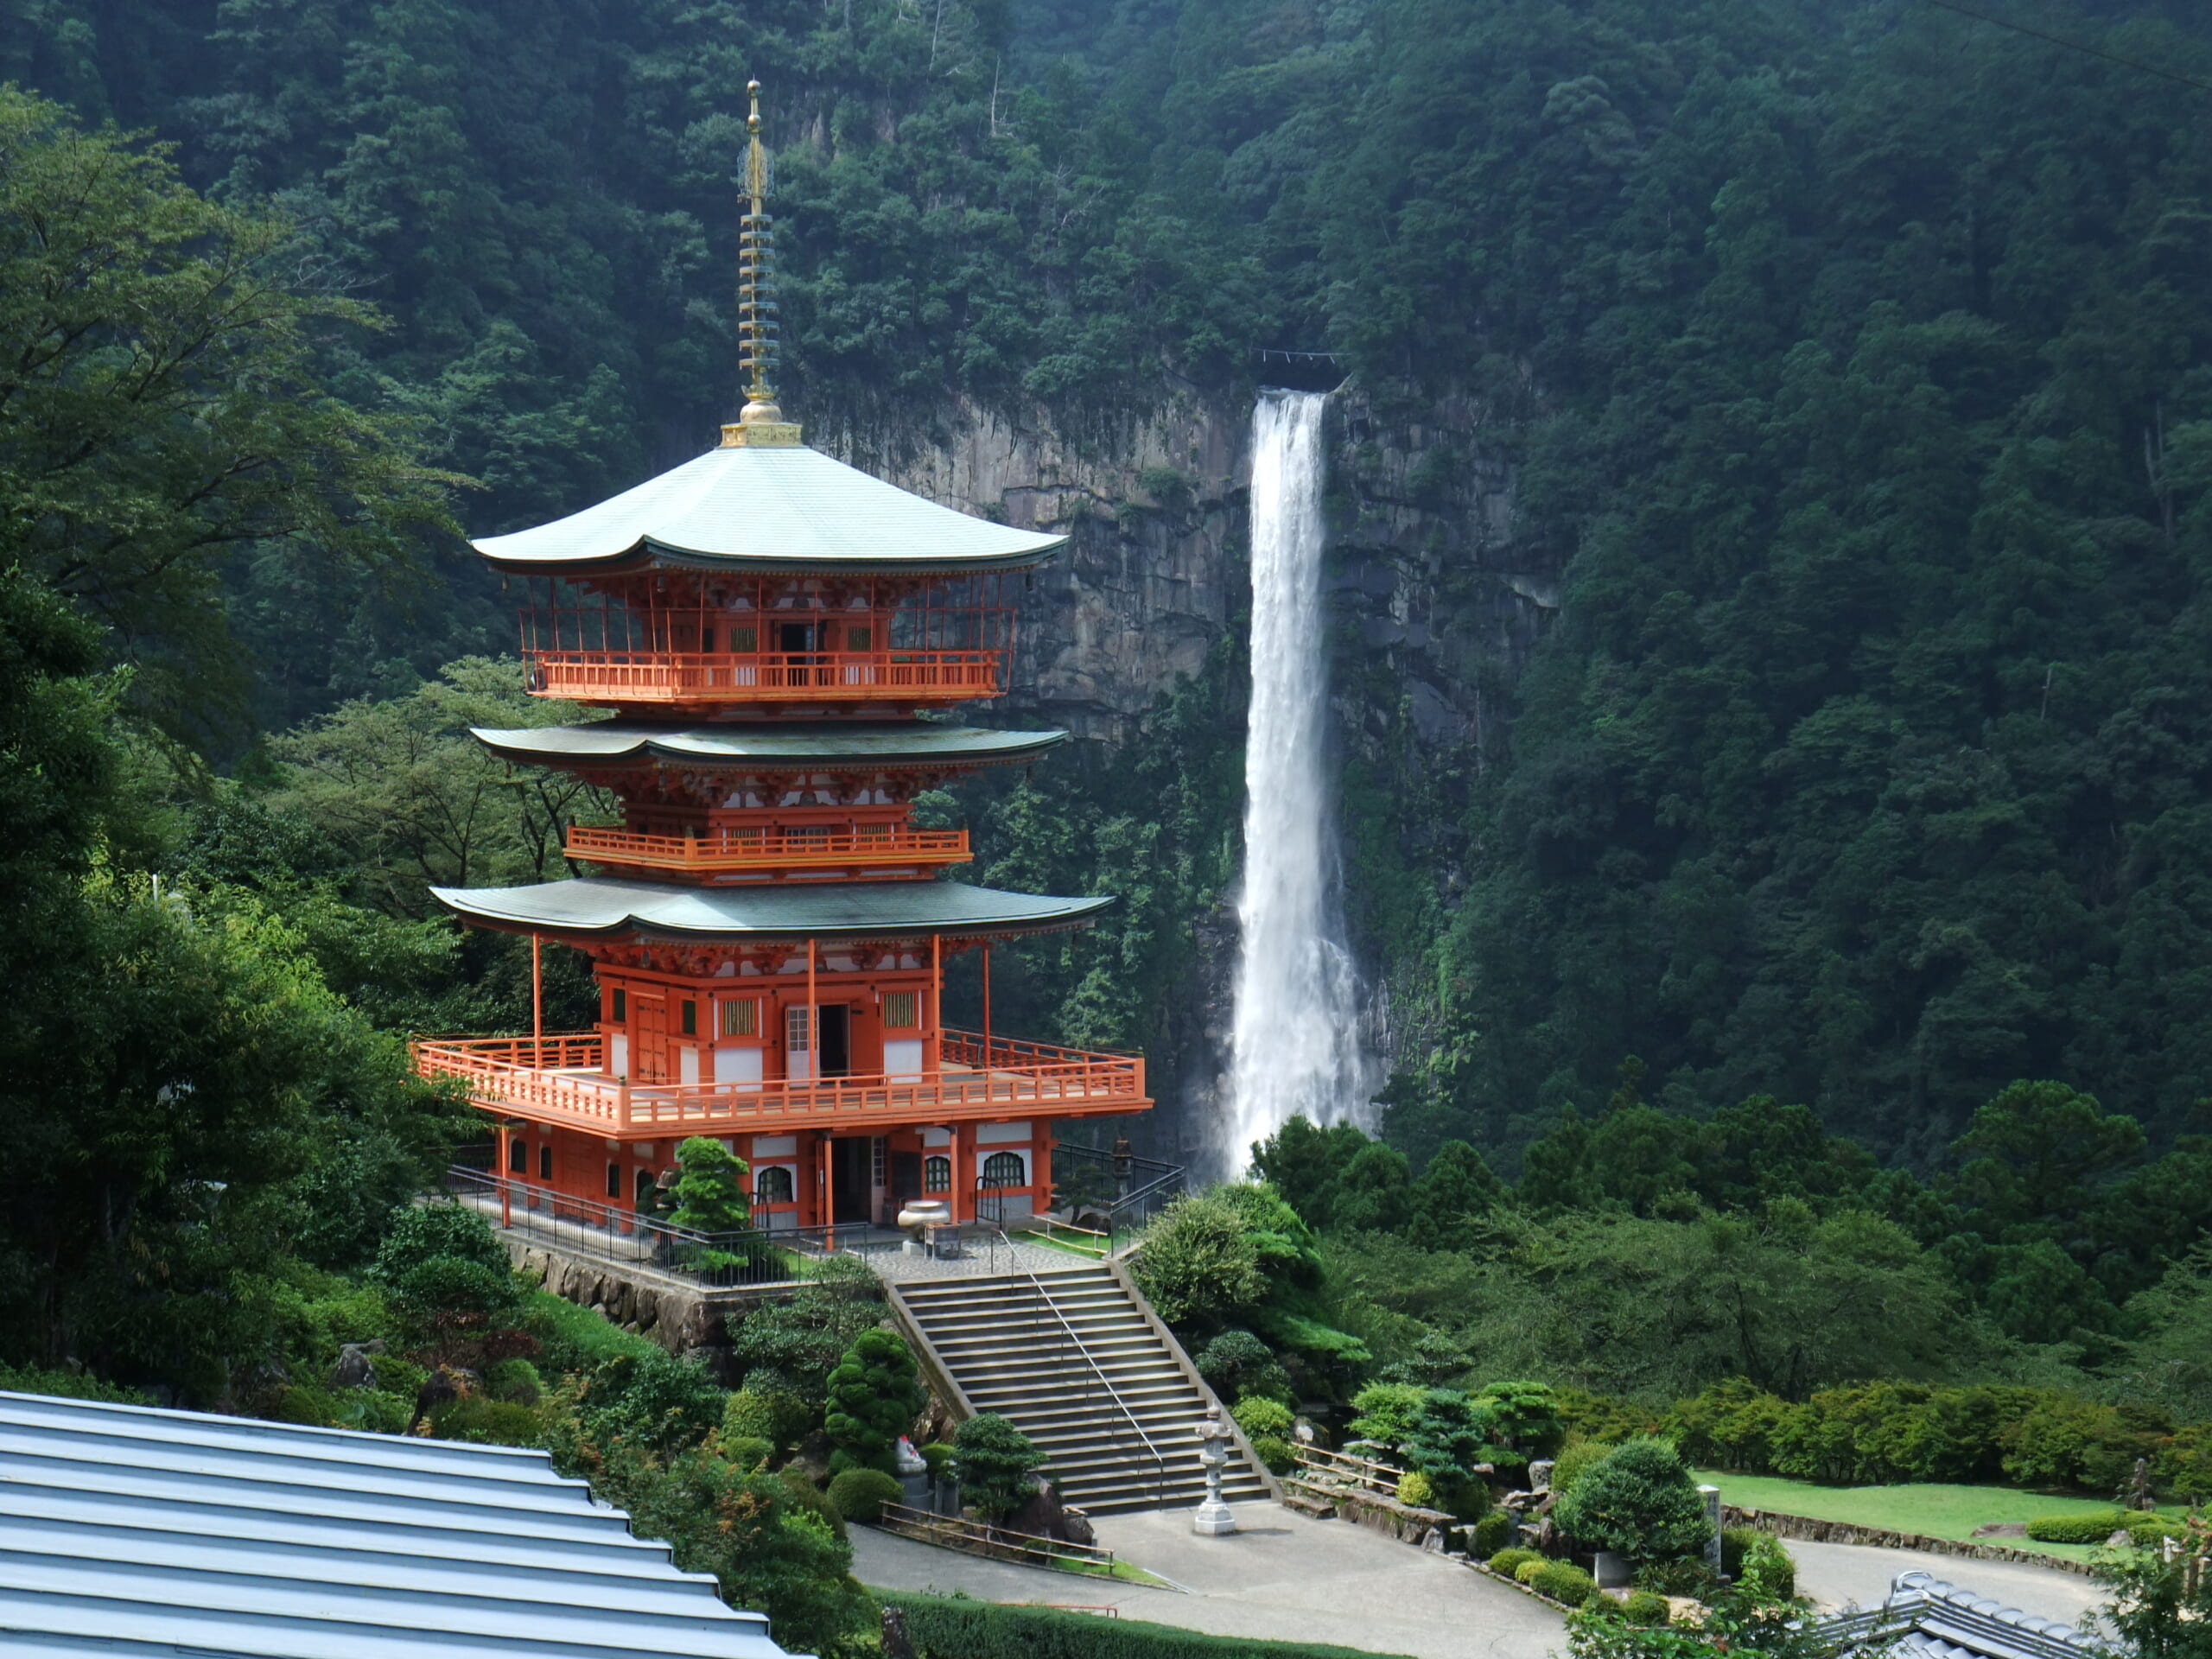 手つかずの自然が残る〝神域〟 那智山三名滝をめぐる「神秘ウォーク